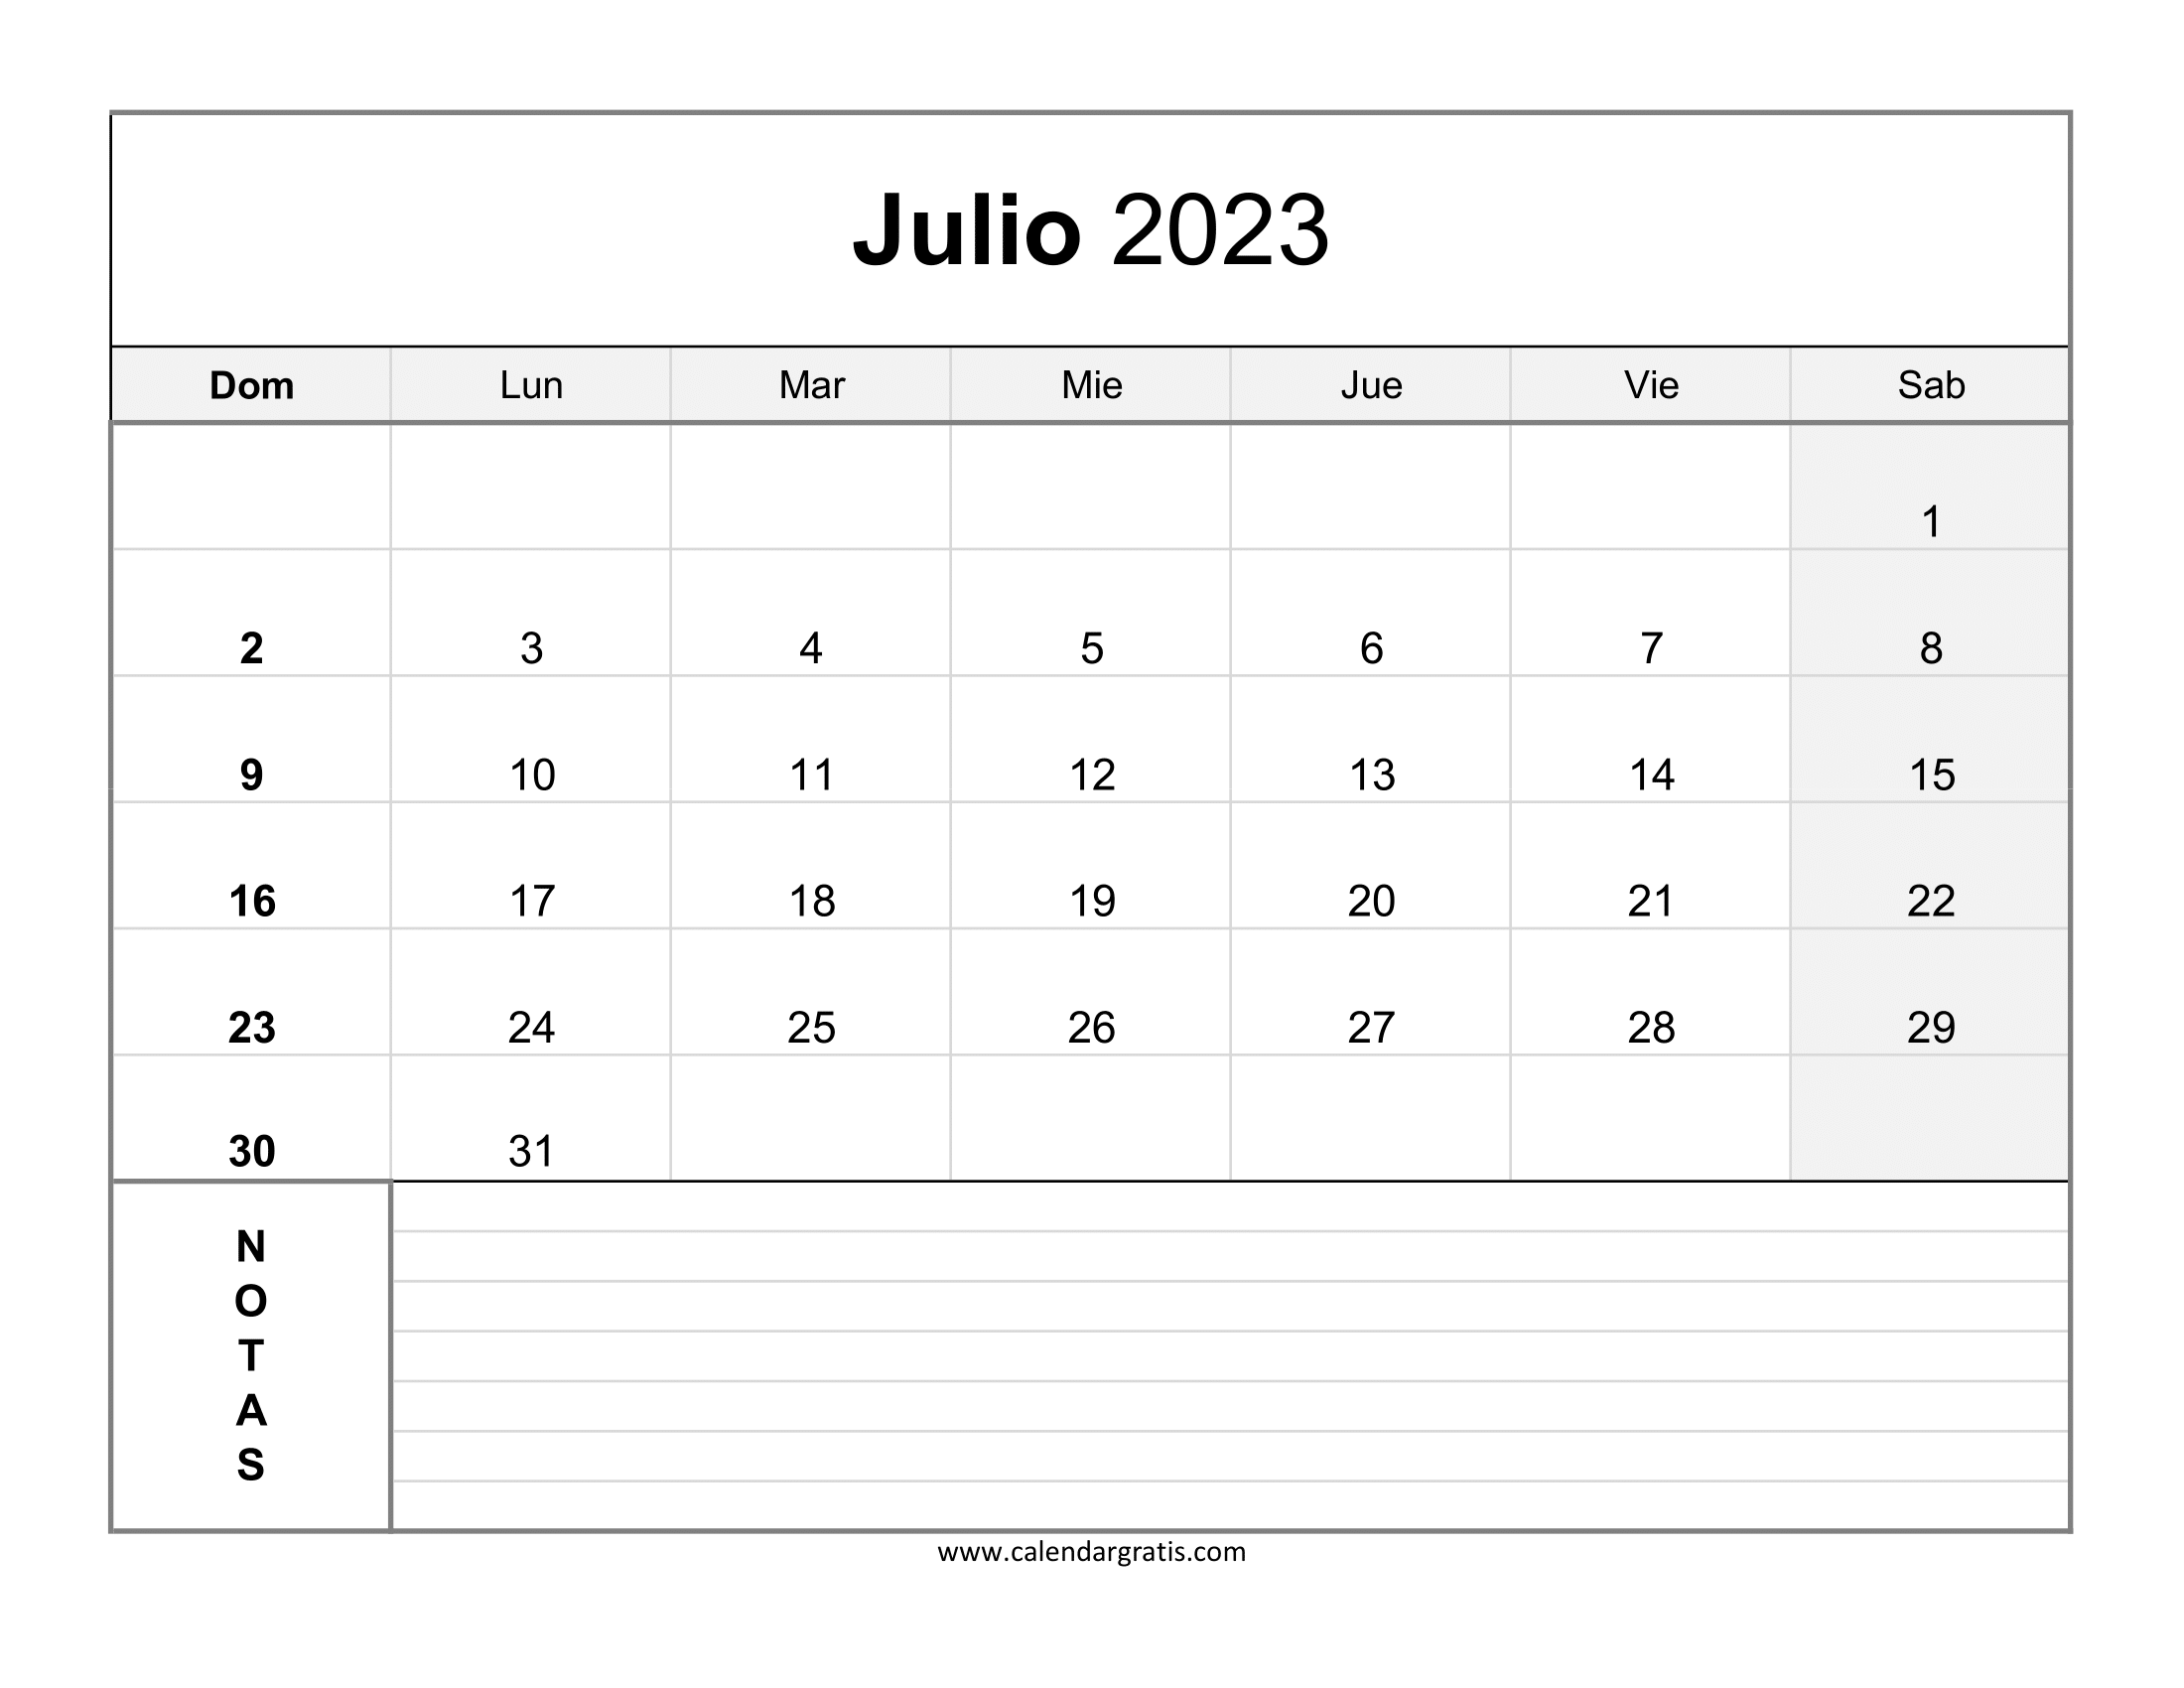 Calendario de julio de 2023 con sección de notas en la parte inferior del calendario y las fechas de los sábados están resaltadas.